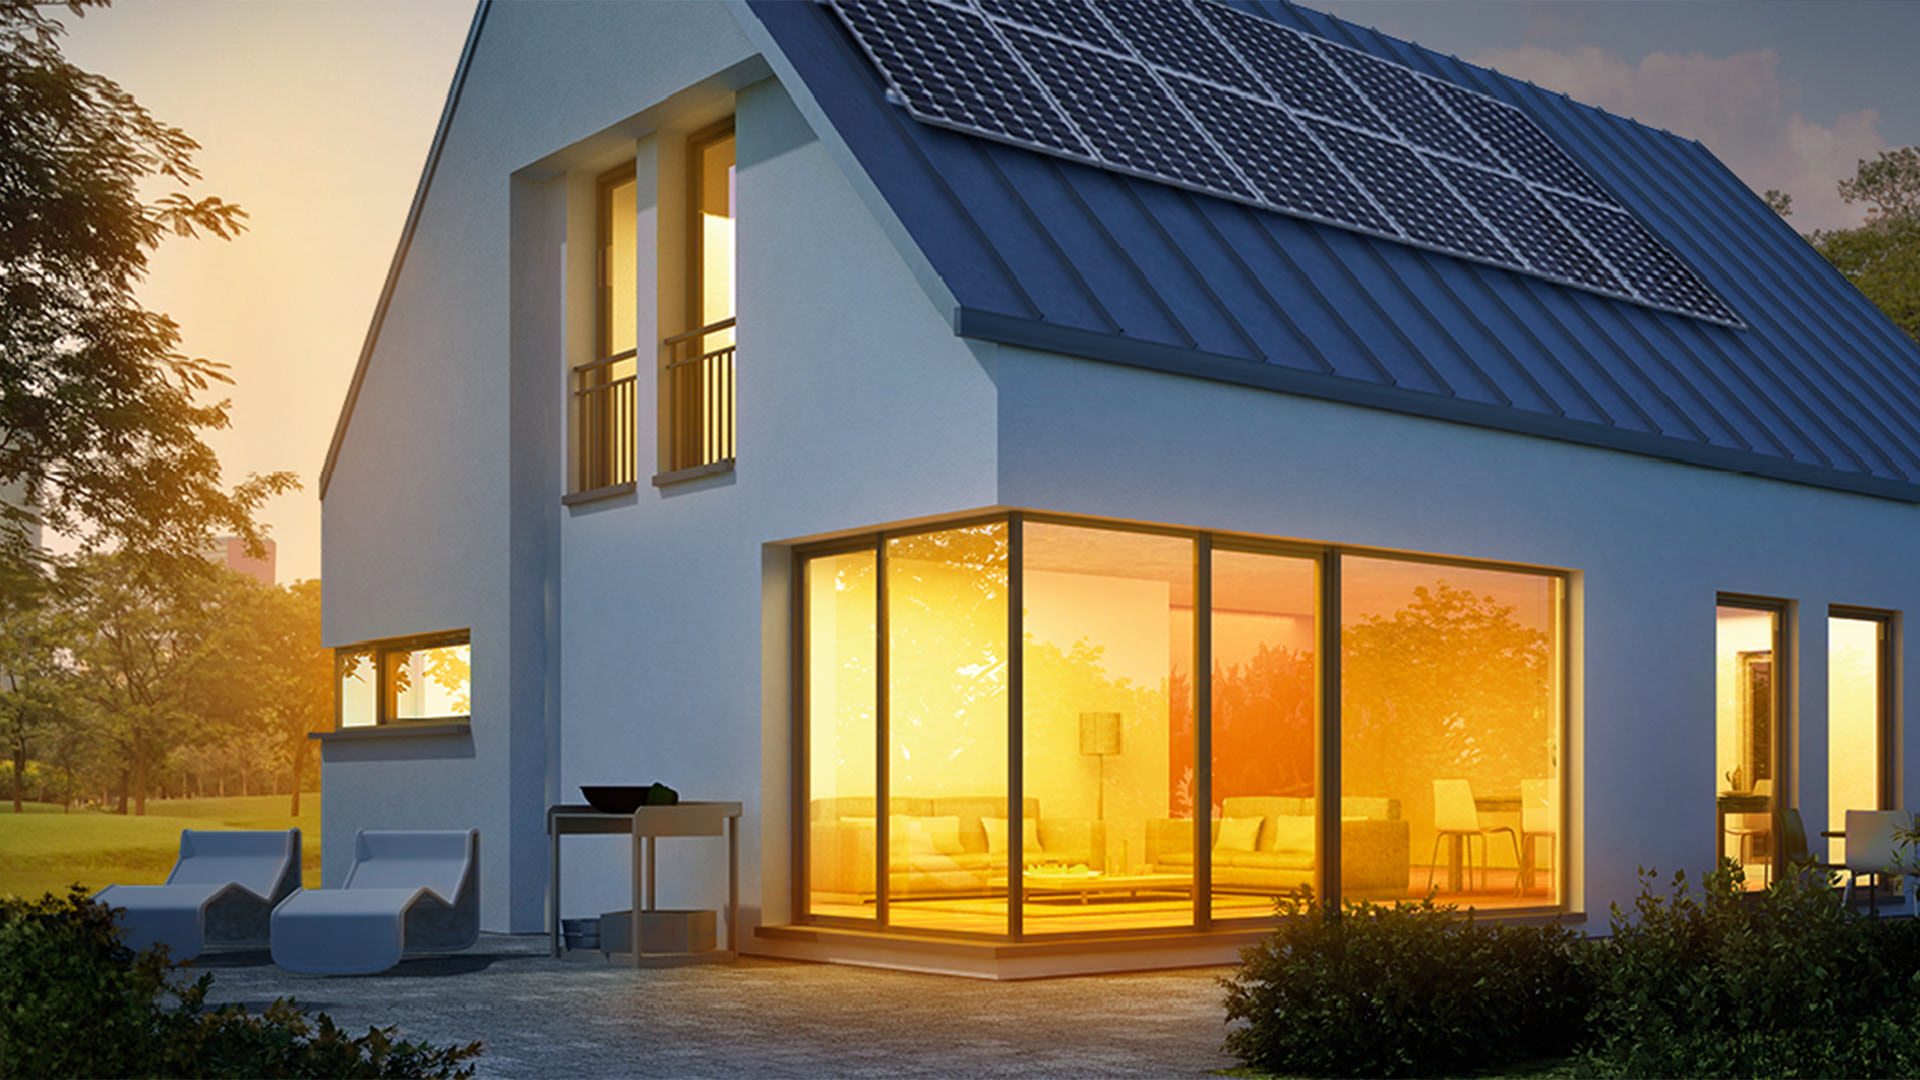 Ein Einfamilienhaus mit Solardach und leuchtendem Innenraum